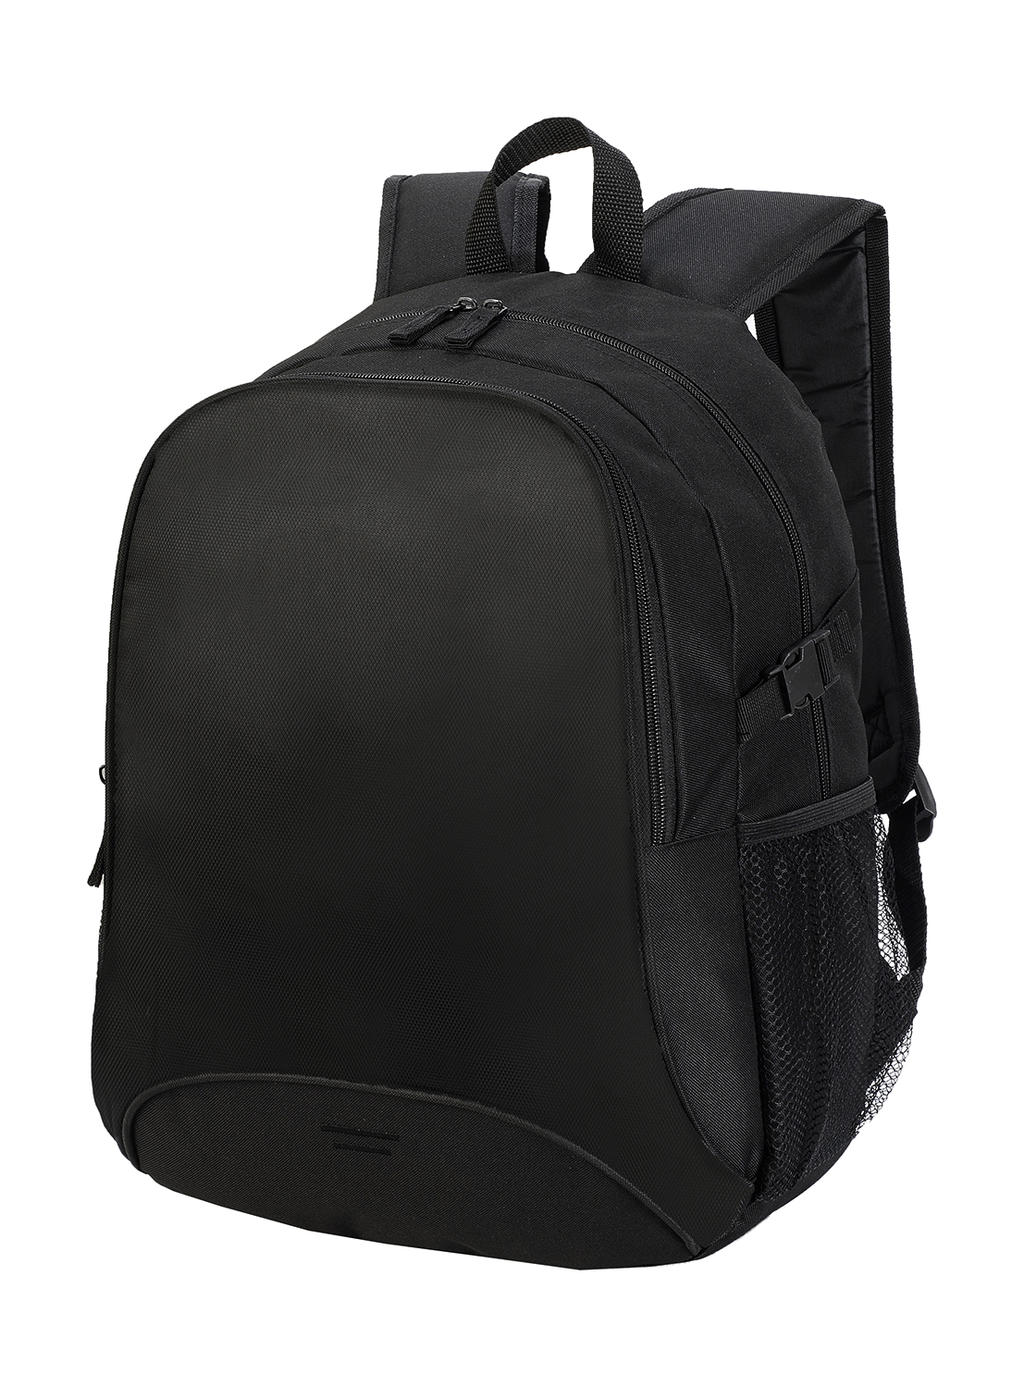  Osaka Basic Backpack in Farbe Black/Black